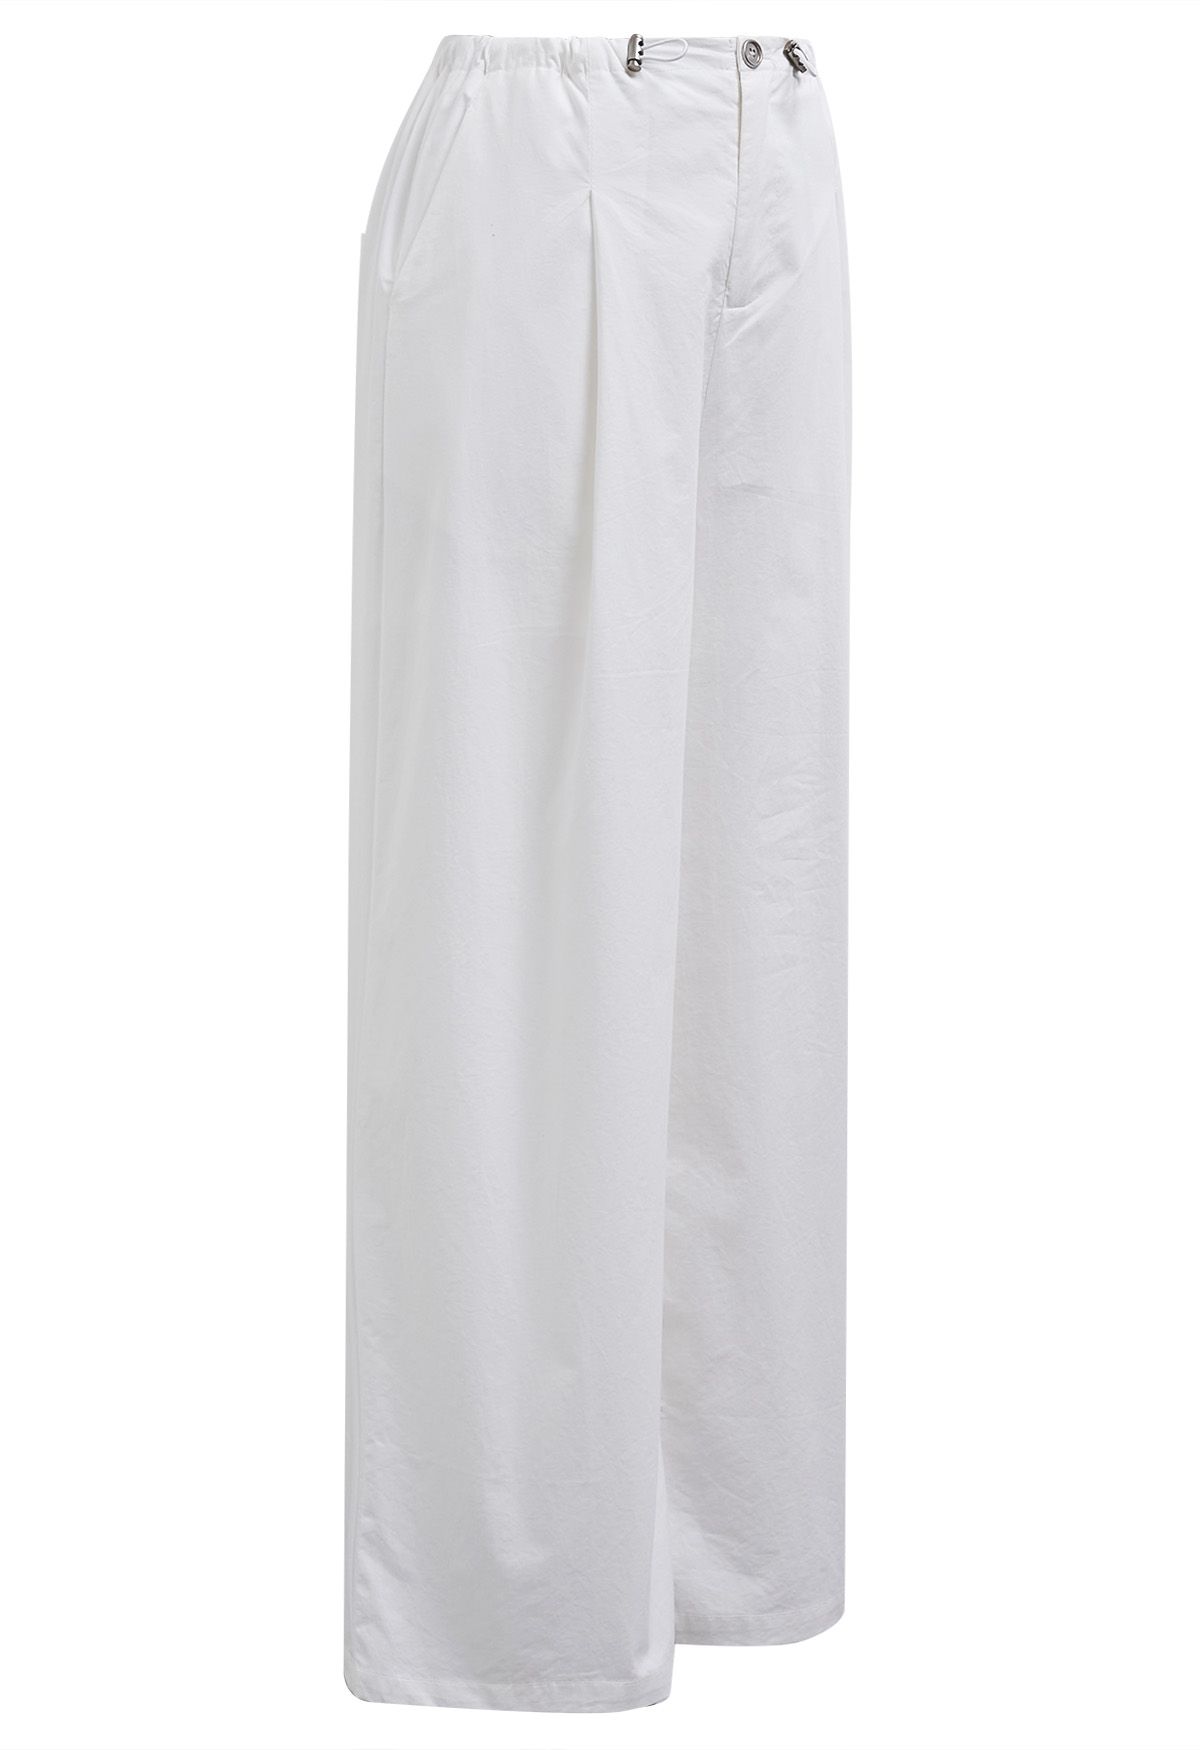 Weite Hose mit entspannter Passform und Kordelzug in der Taille in Weiß